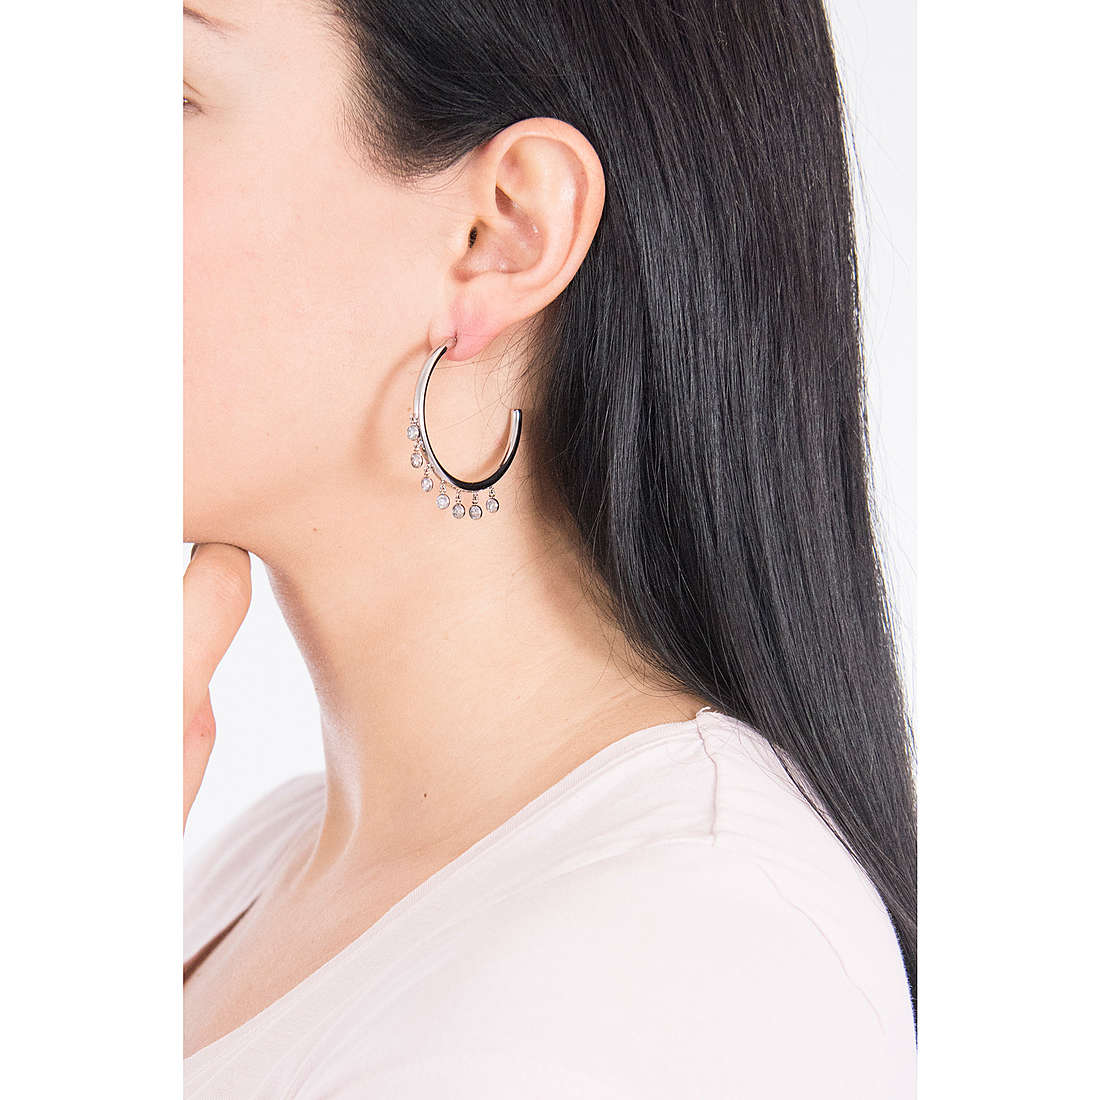 Morellato earrings Cerchi woman SAKM42 wearing